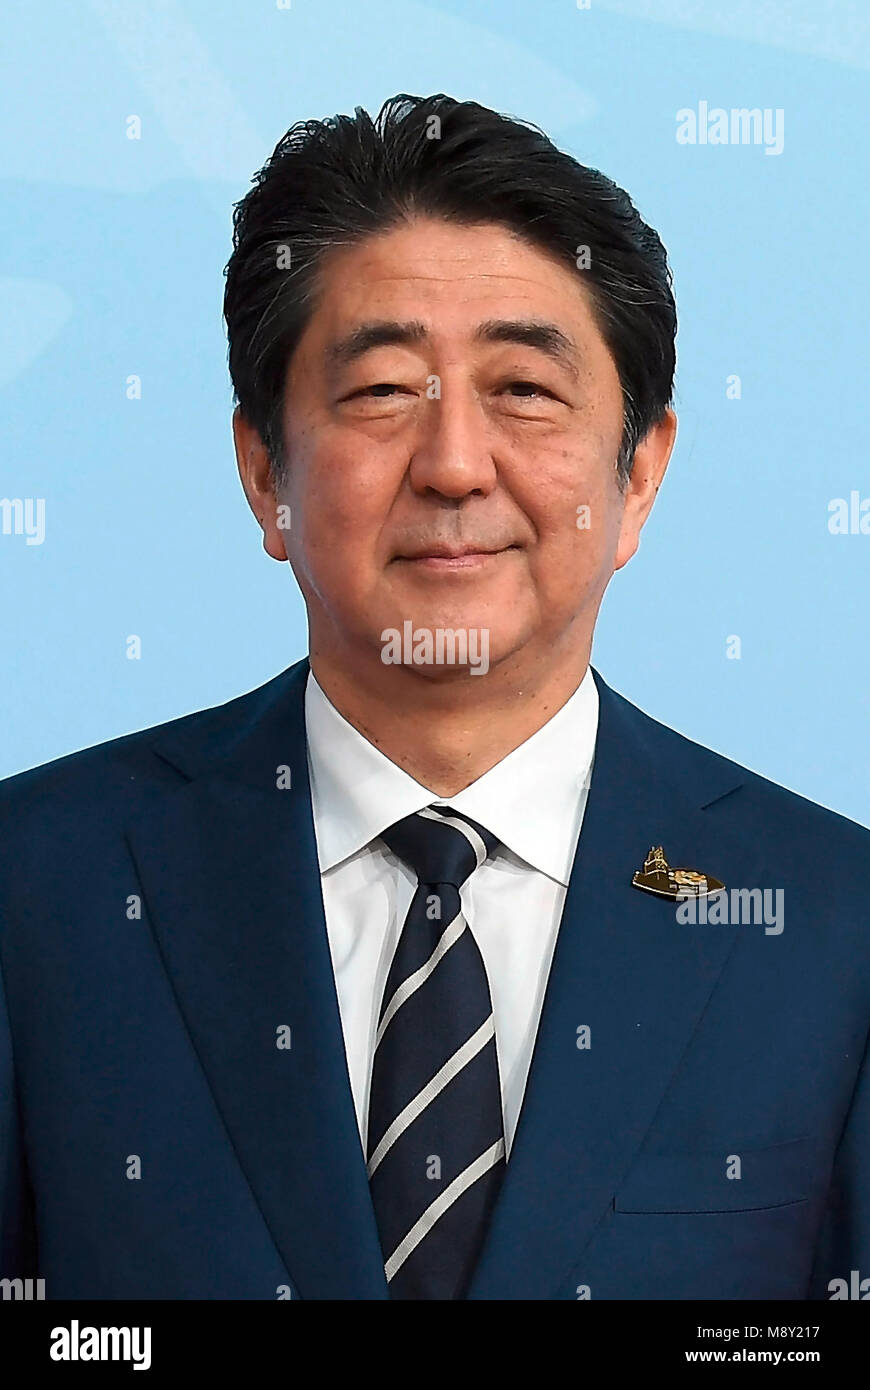 Shinzo Abe - * 21.09.1954 - japanischer Politiker, Premierminister von Japan und Führer der Liberalen Demokratischen Partei Japans LDP. Stockfoto